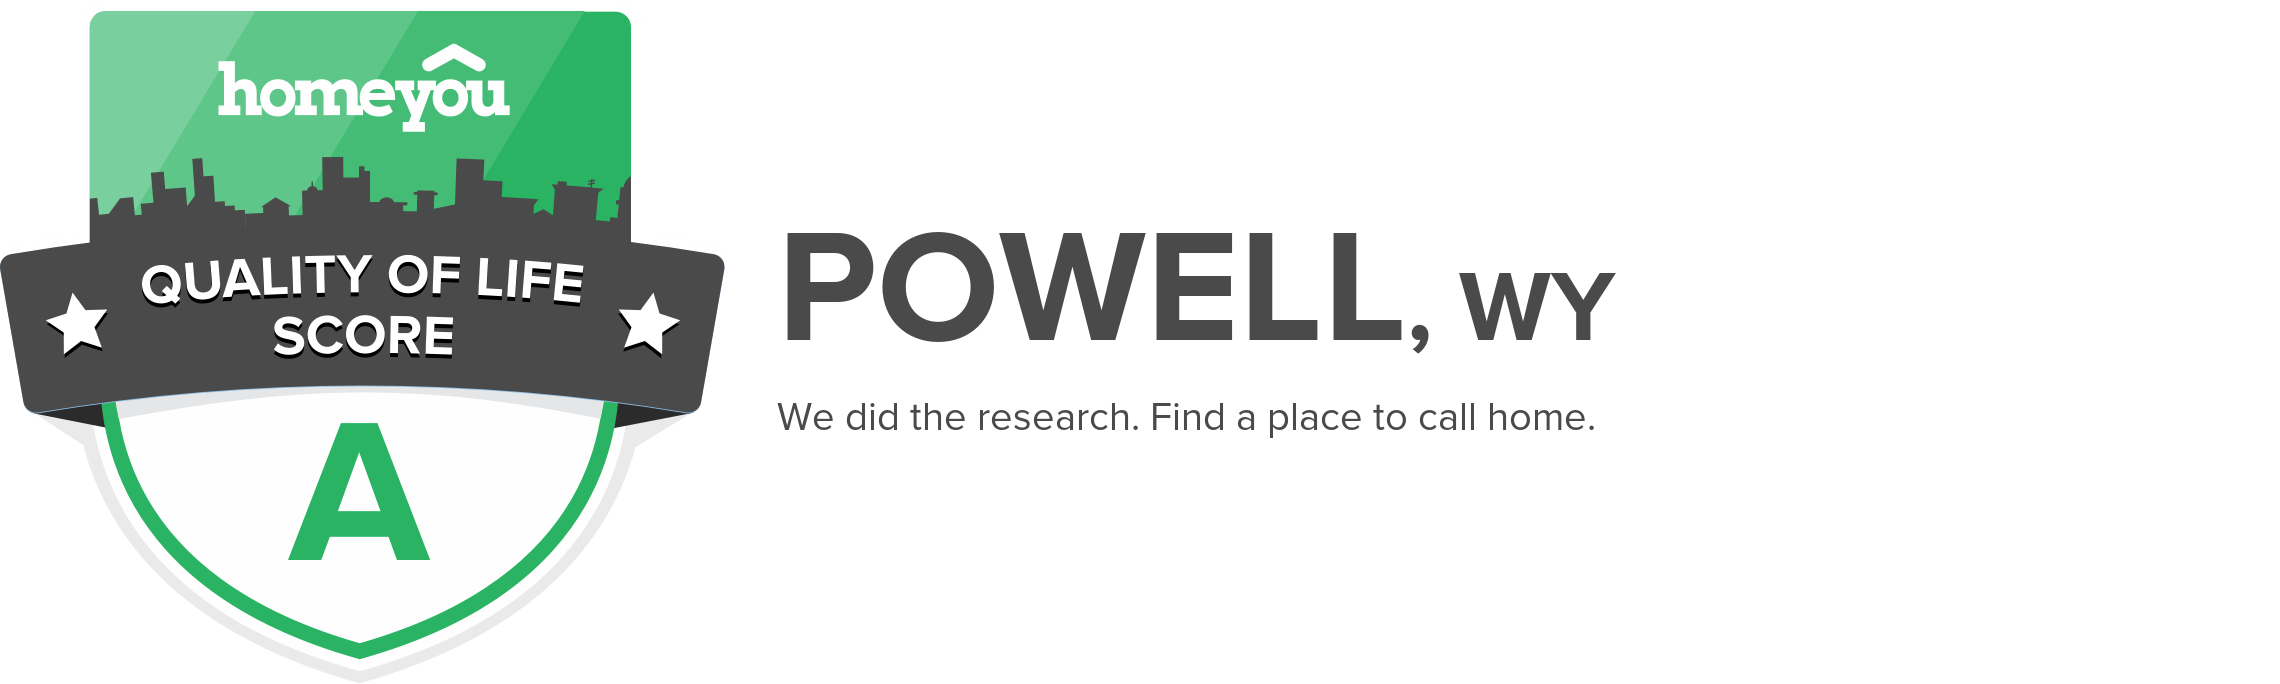 Powell, WY